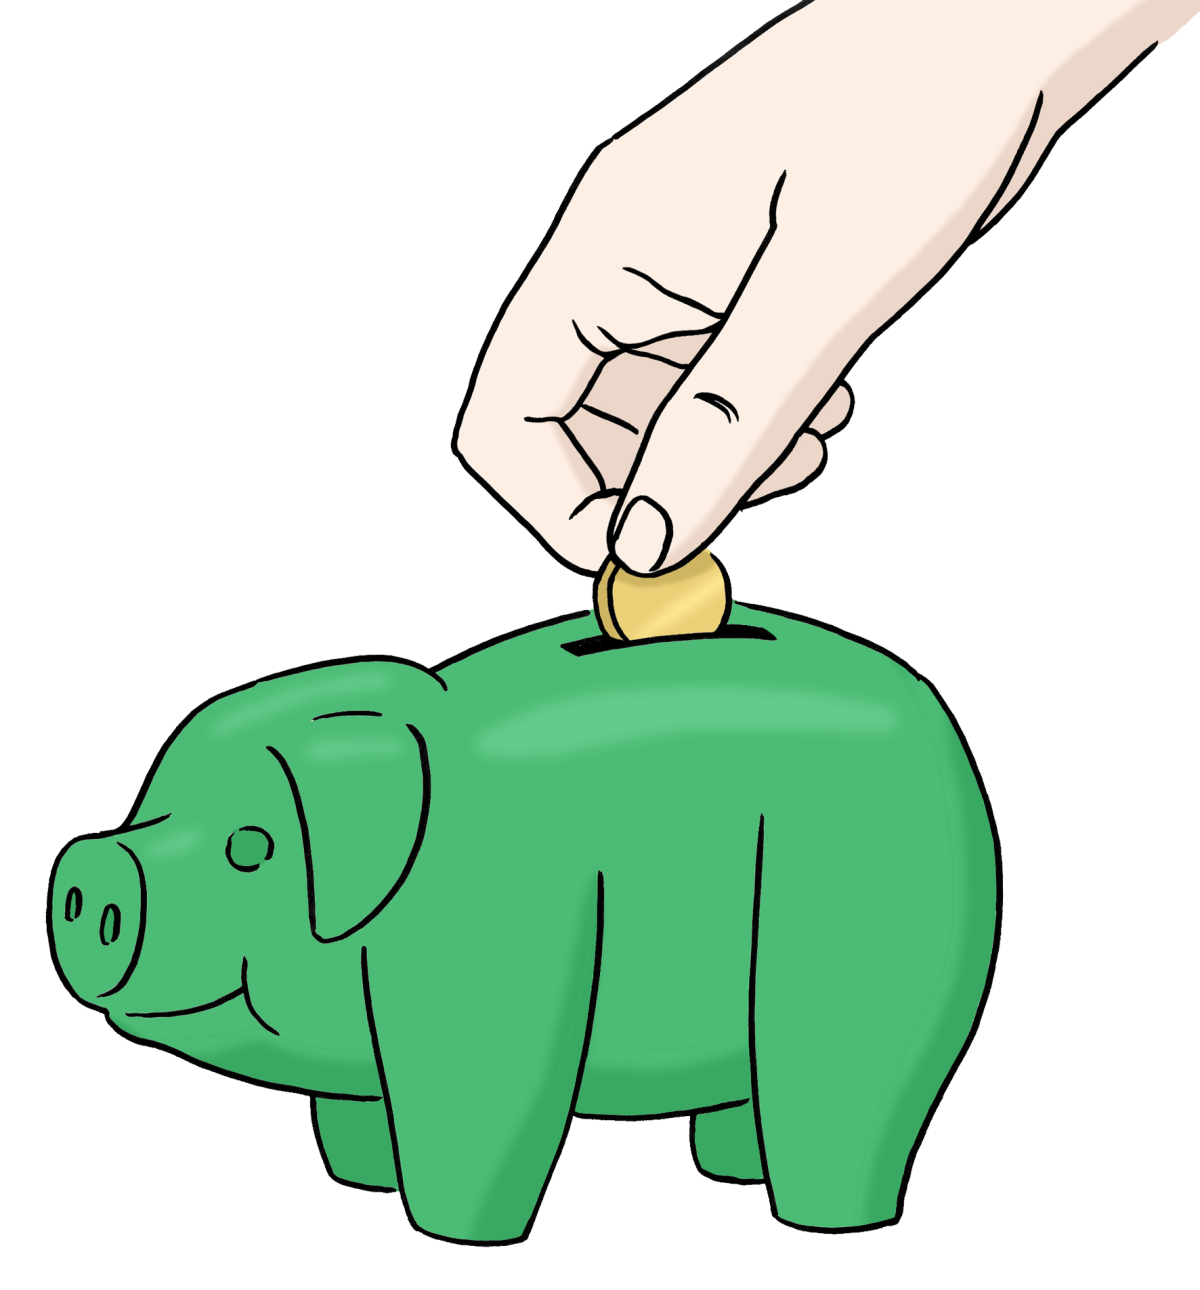 Zeichnung: grünes Sparschwein und eine Hand schmeißt ein Geldstück ein.